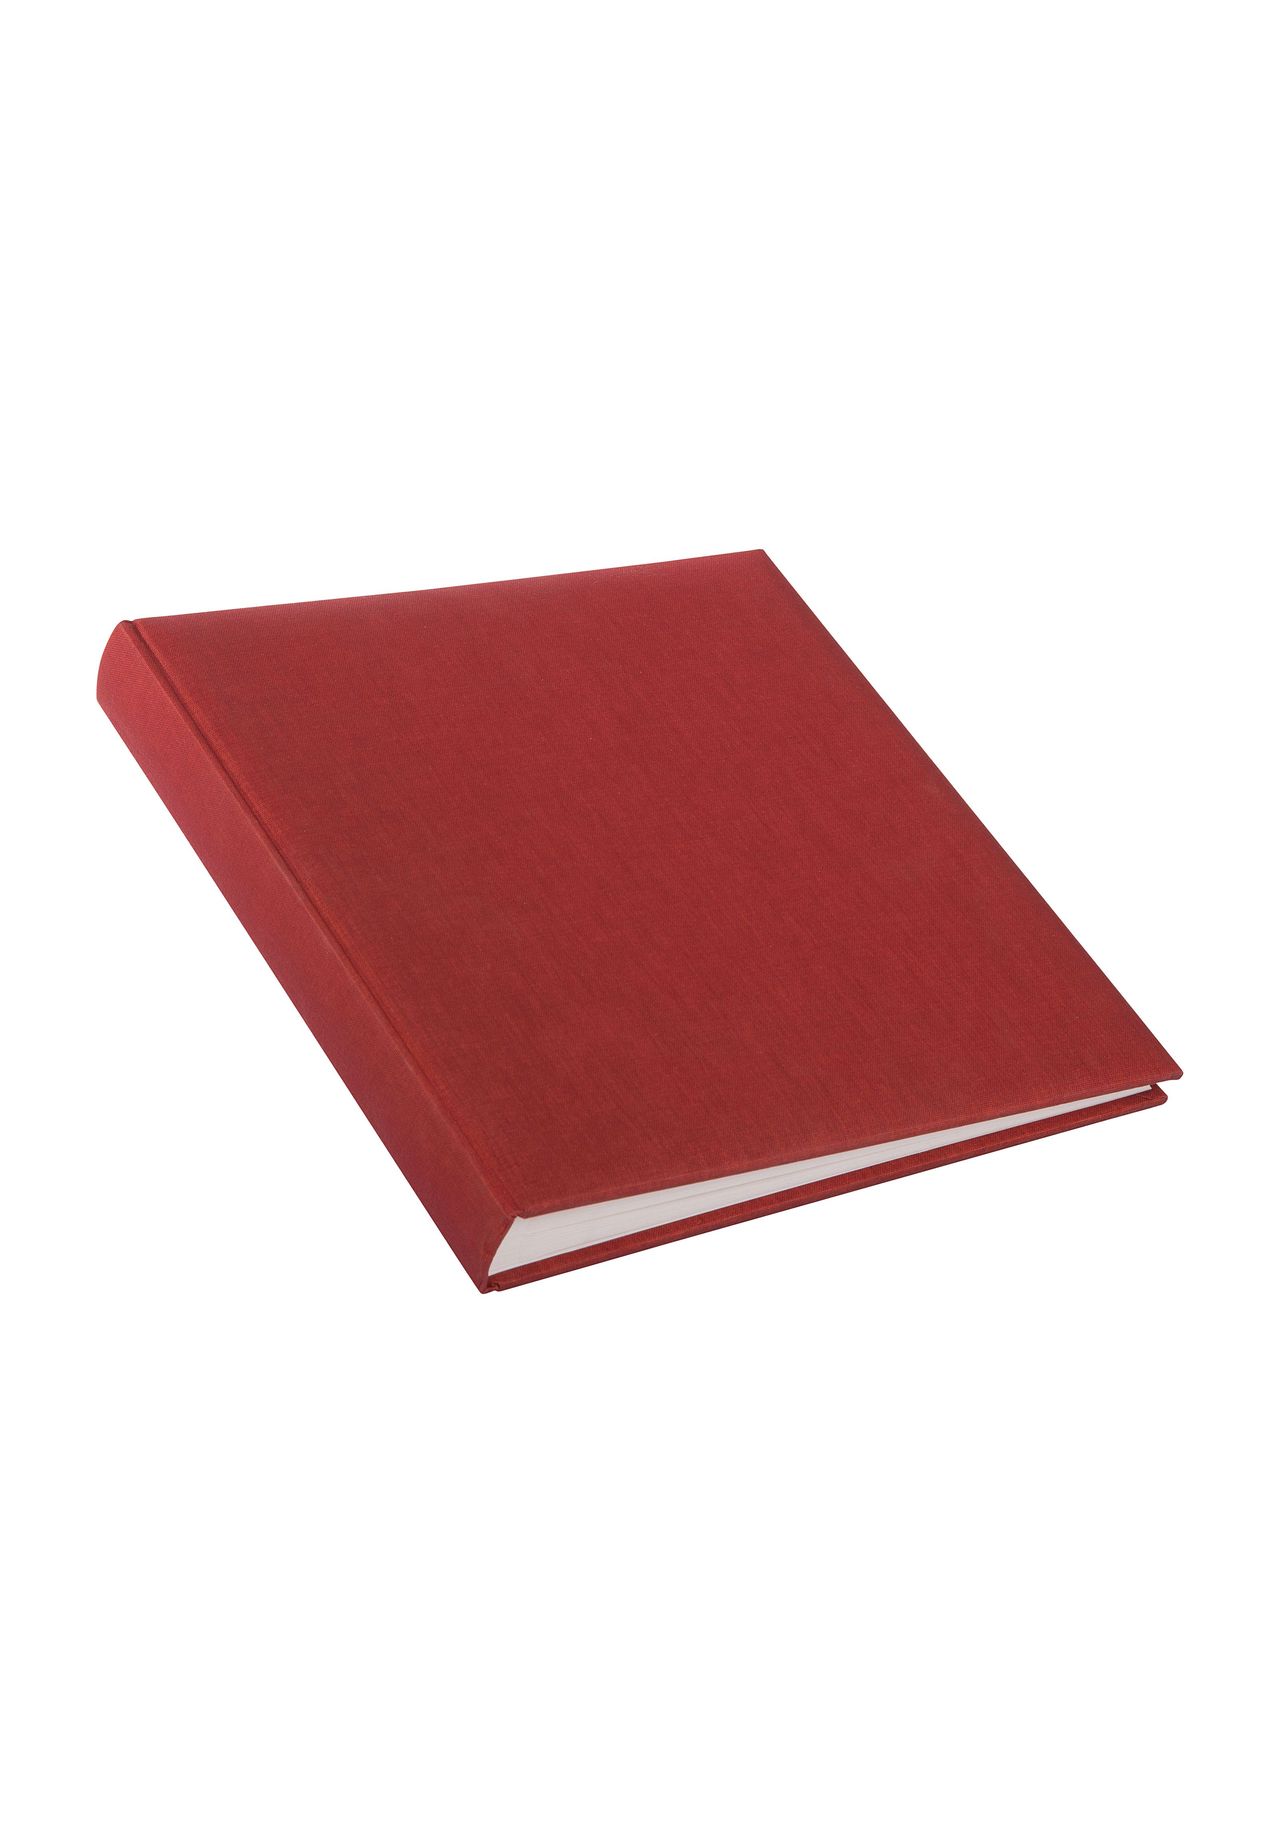 Küche & Haushalt Schreibwaren goldbuch Fotoalbum Summertime, rot/braun, 30x31 cm, 60 weiße Seiten